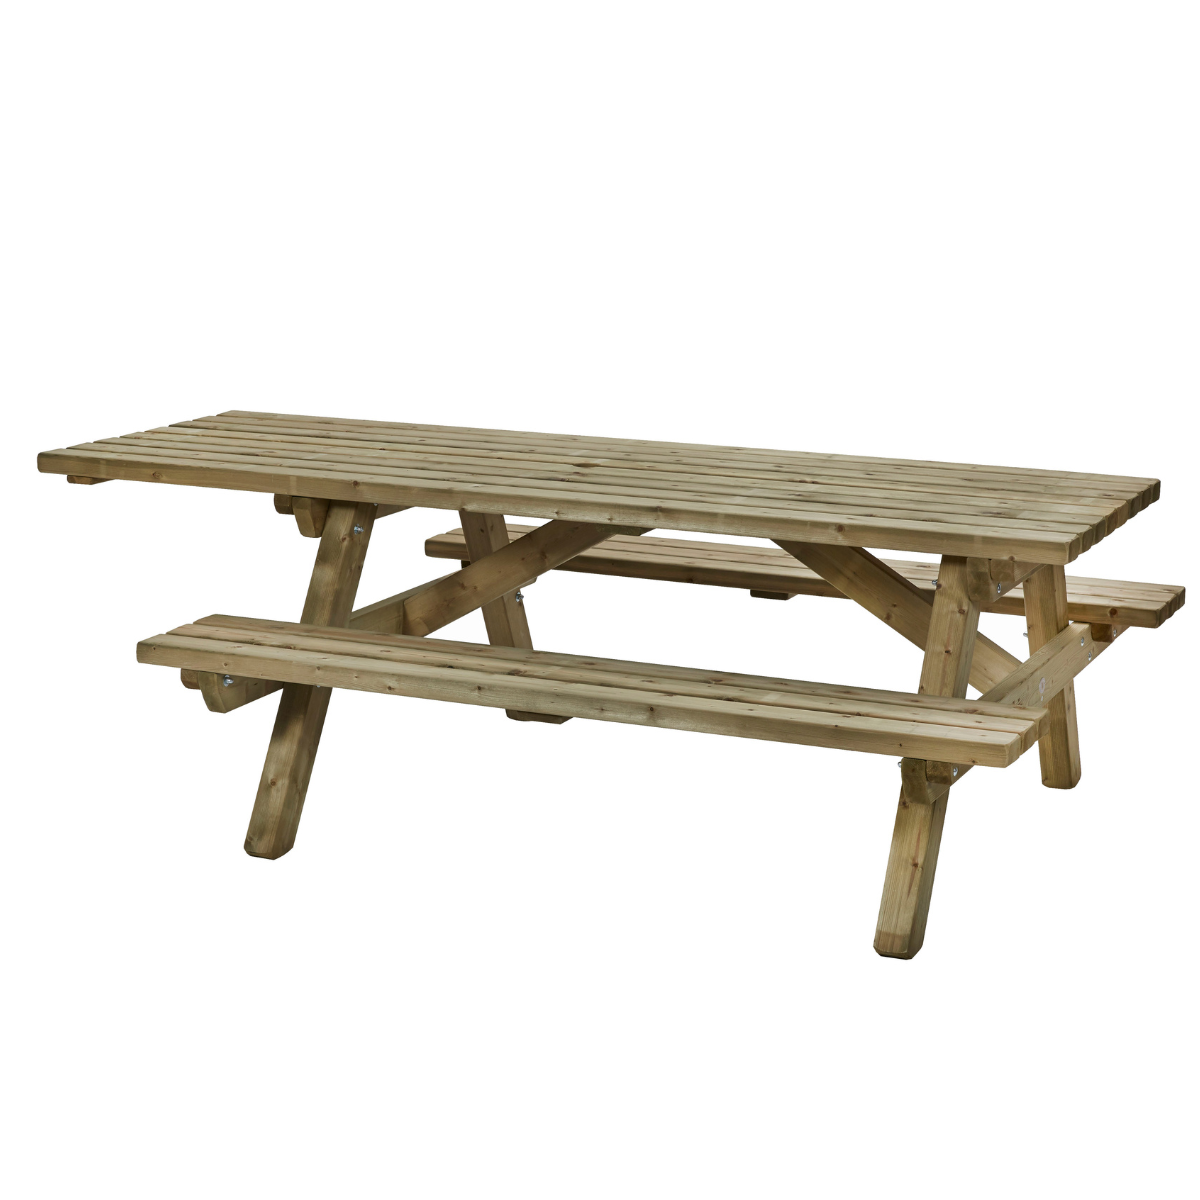 rolstoel picknicktafel rolstoelpicknicktafel voor mensen met of zonder met goed kwaliteit hout   